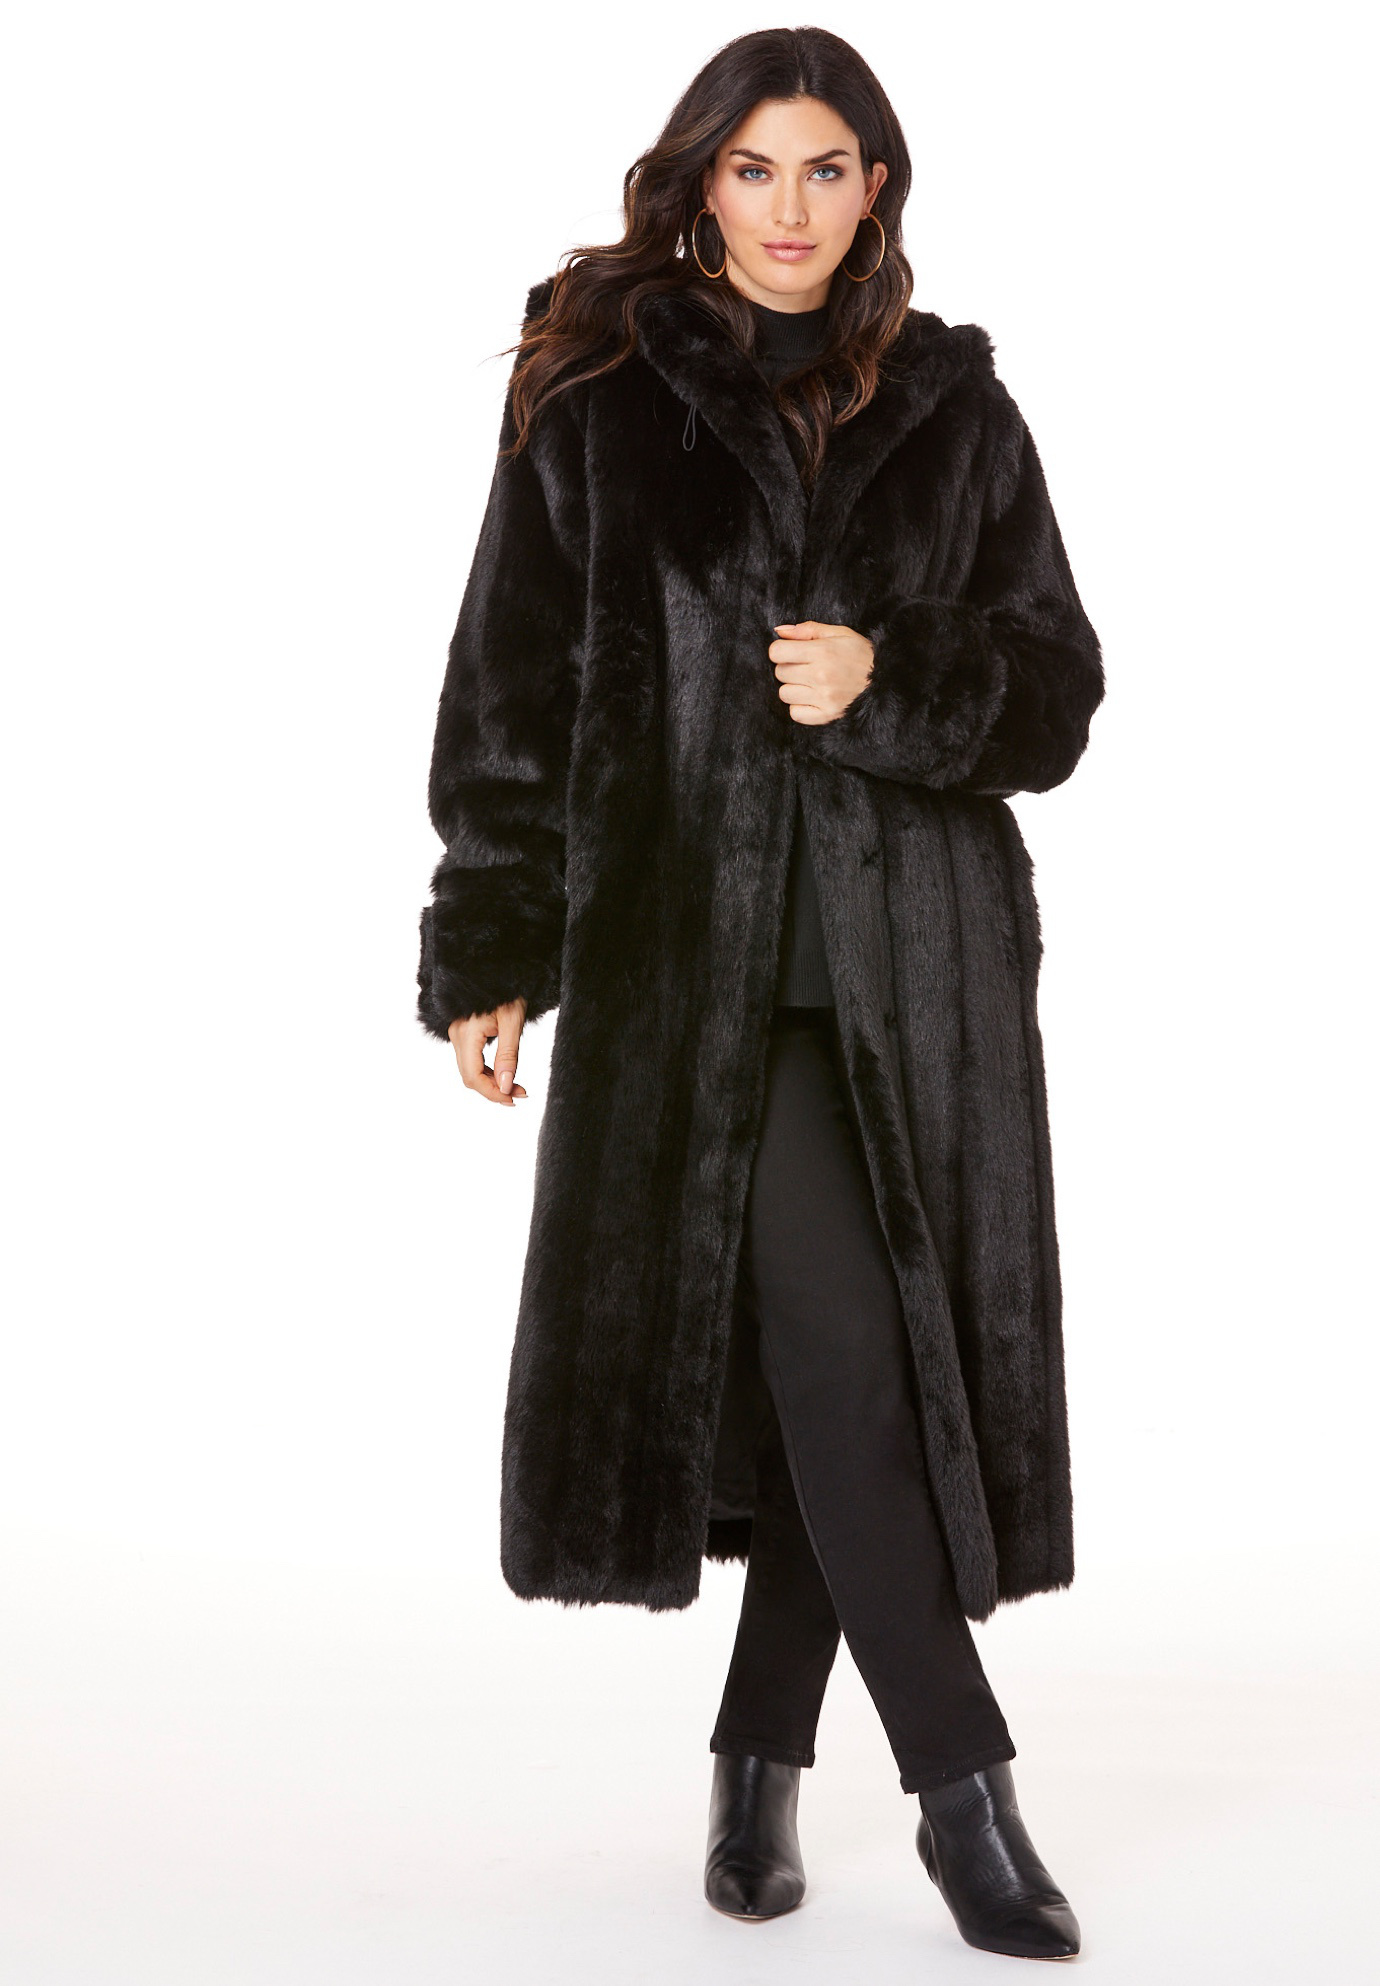 Full Length Faux-Fur Coat with Hood | Roaman's